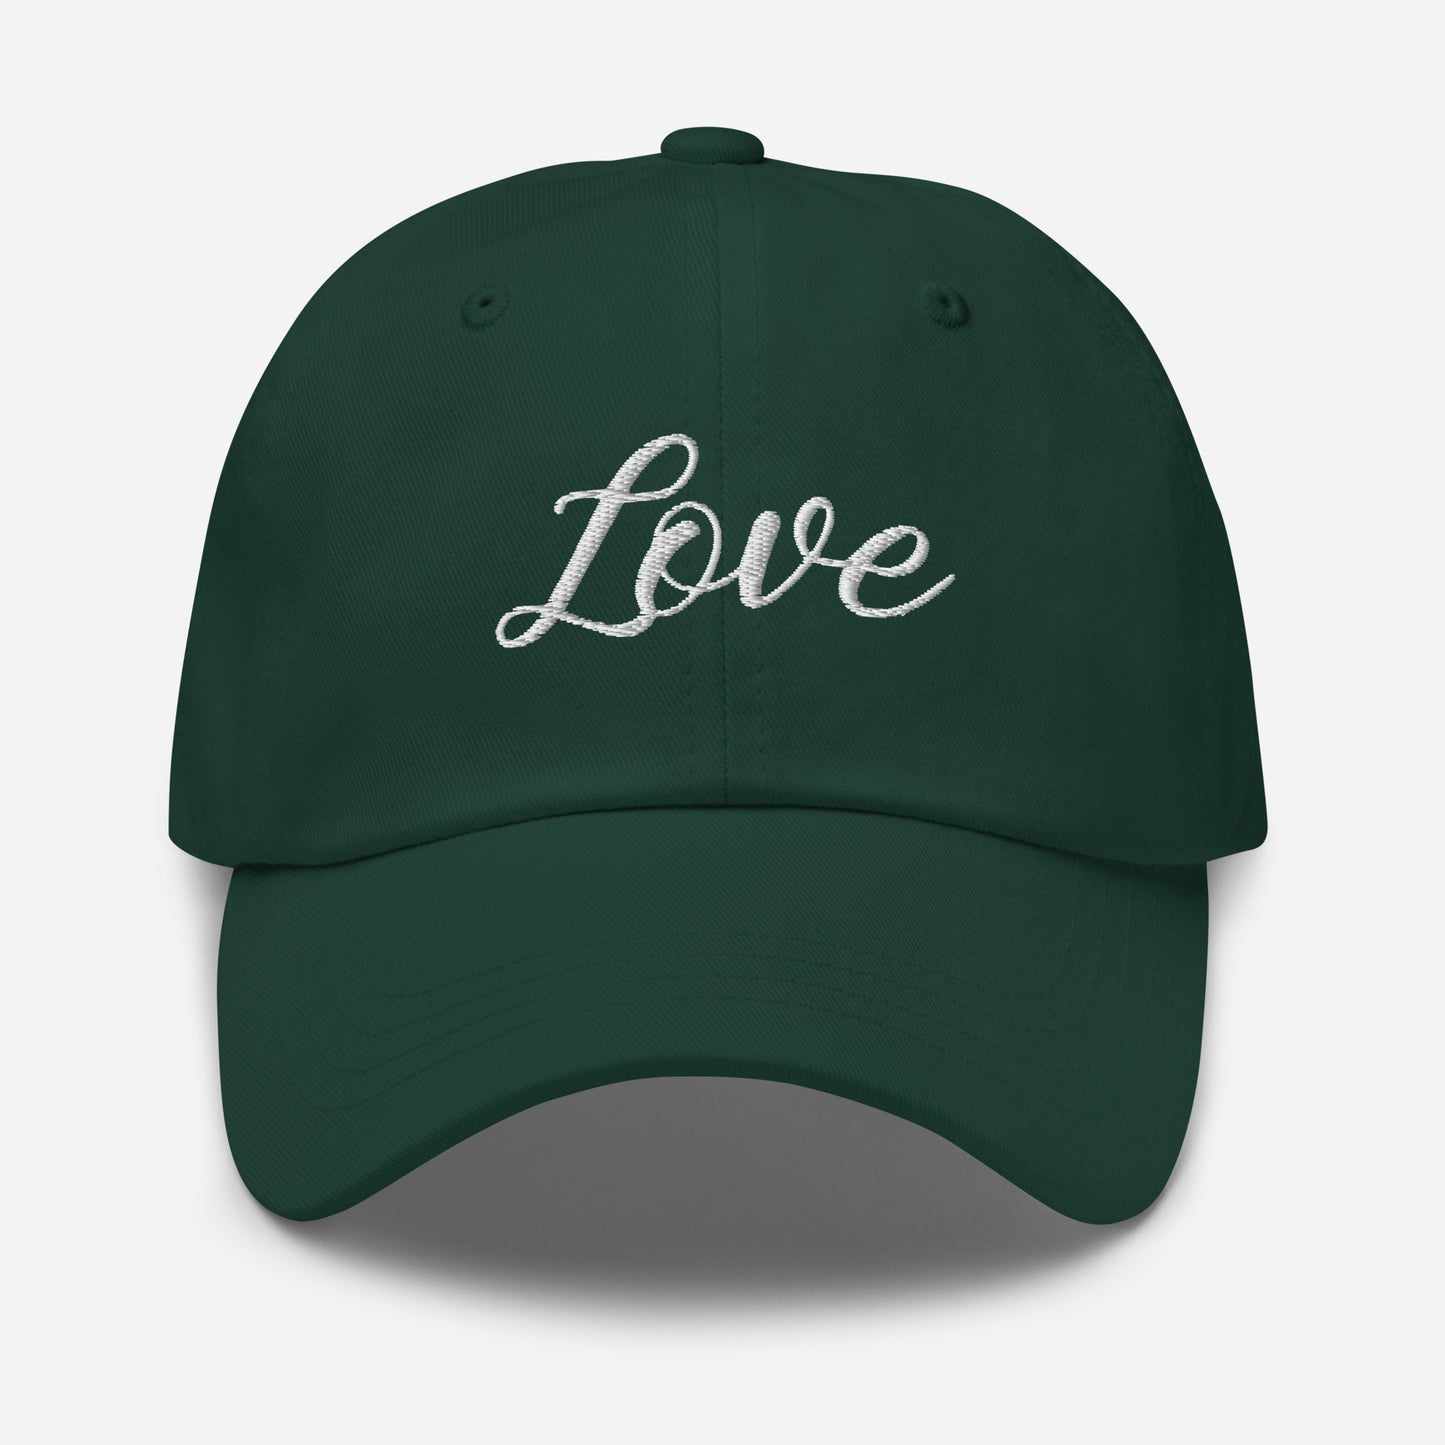 "Love" Dad hat